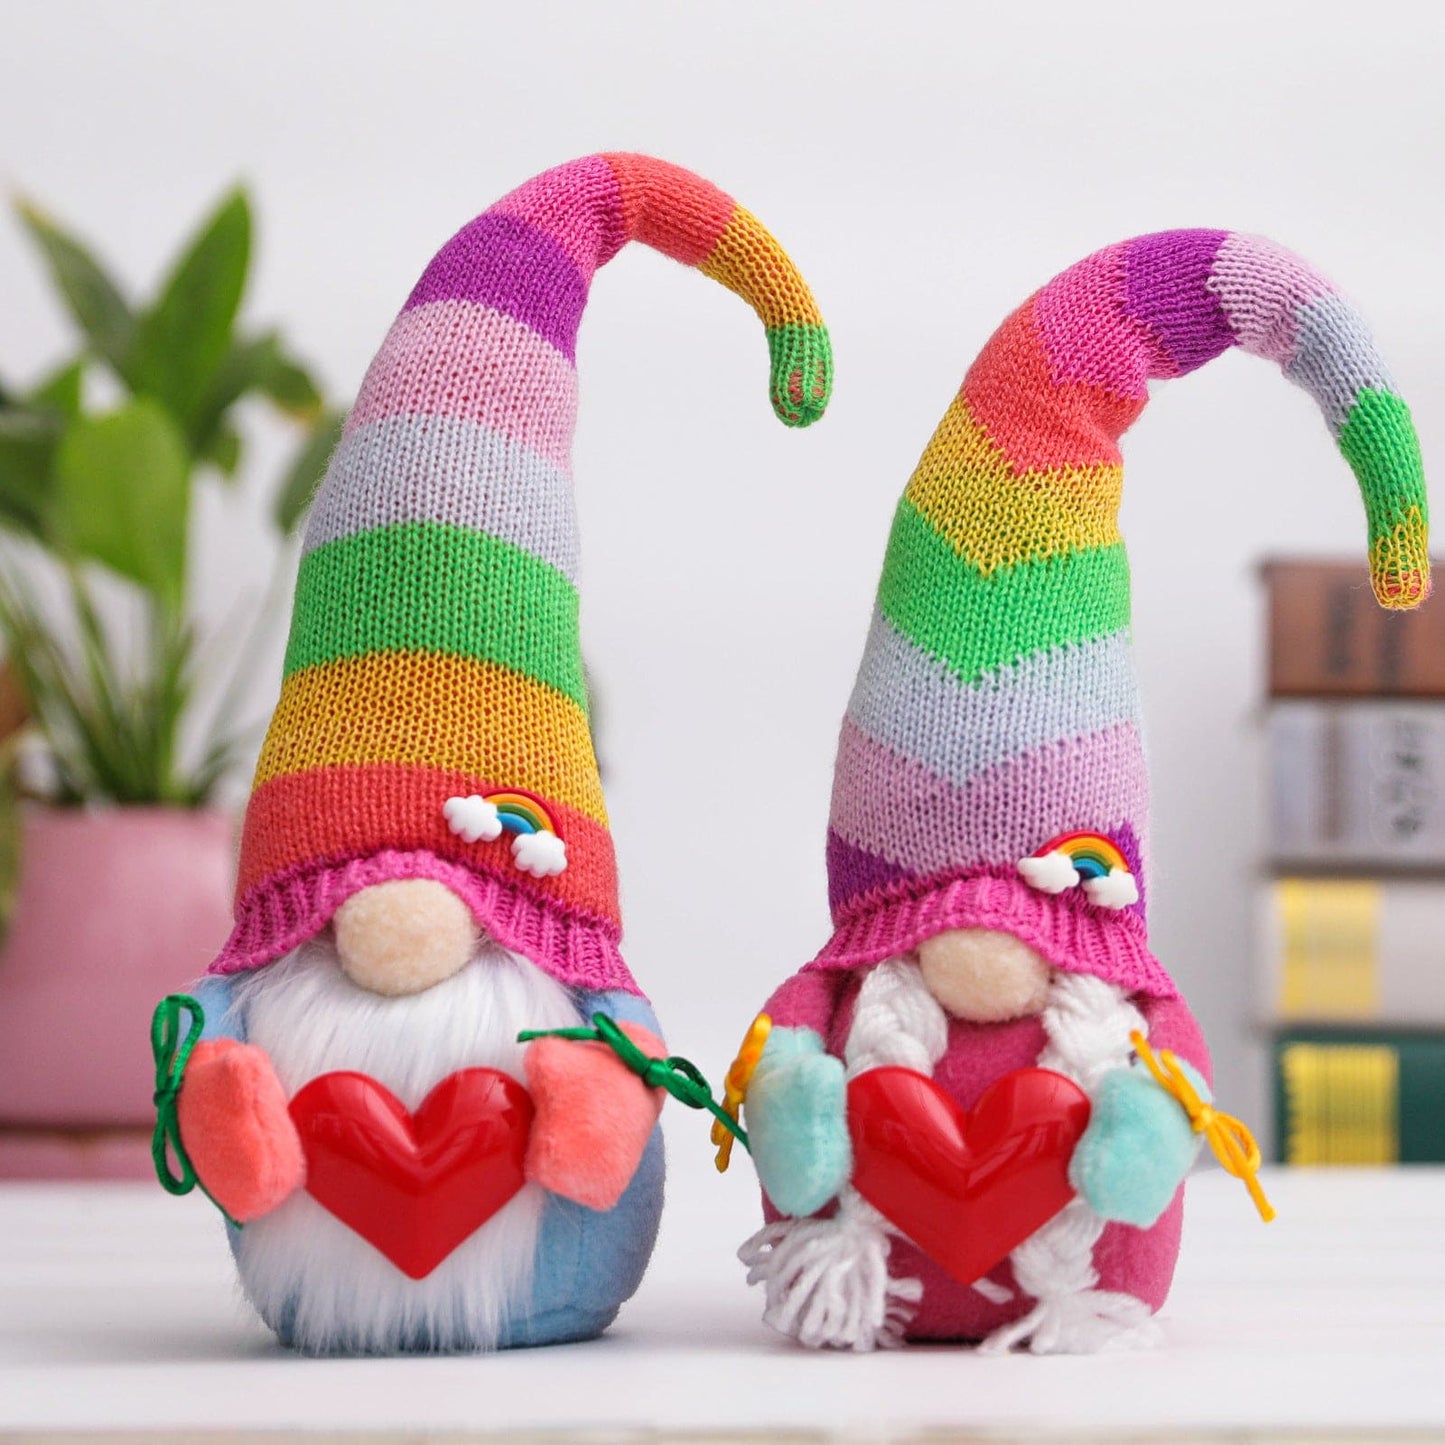 Faceless Doll Children's Toy Knitting Hug